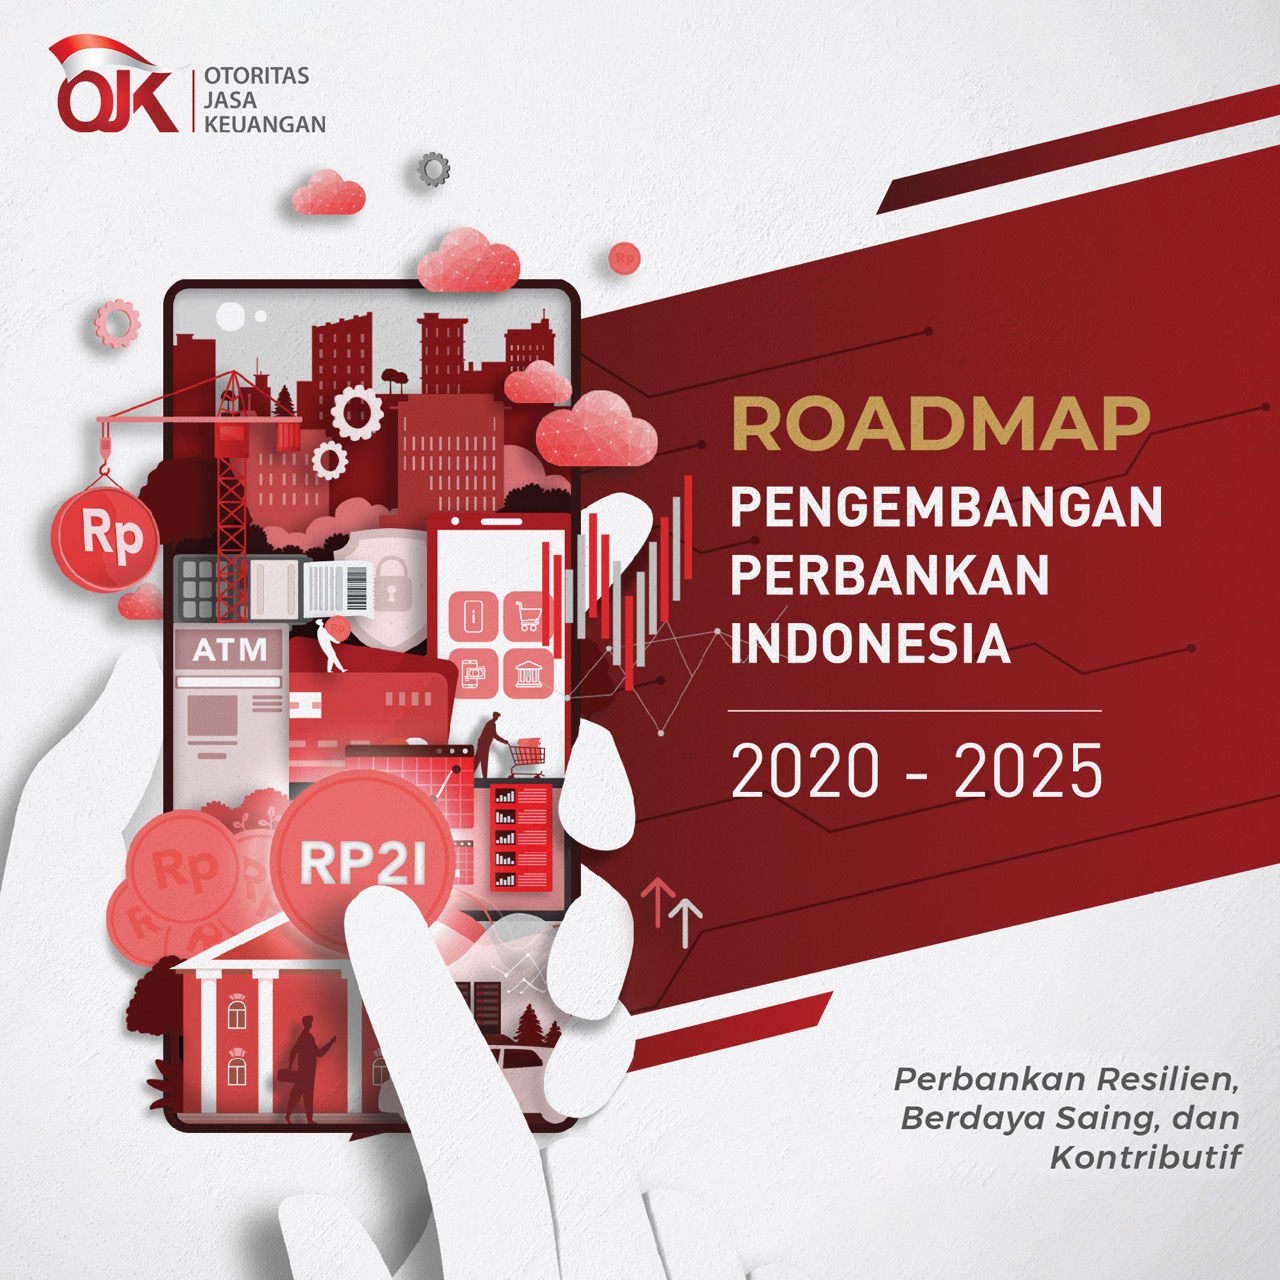 Roadmap Pengembangan Perbankan Indonesia 2020 - 2025